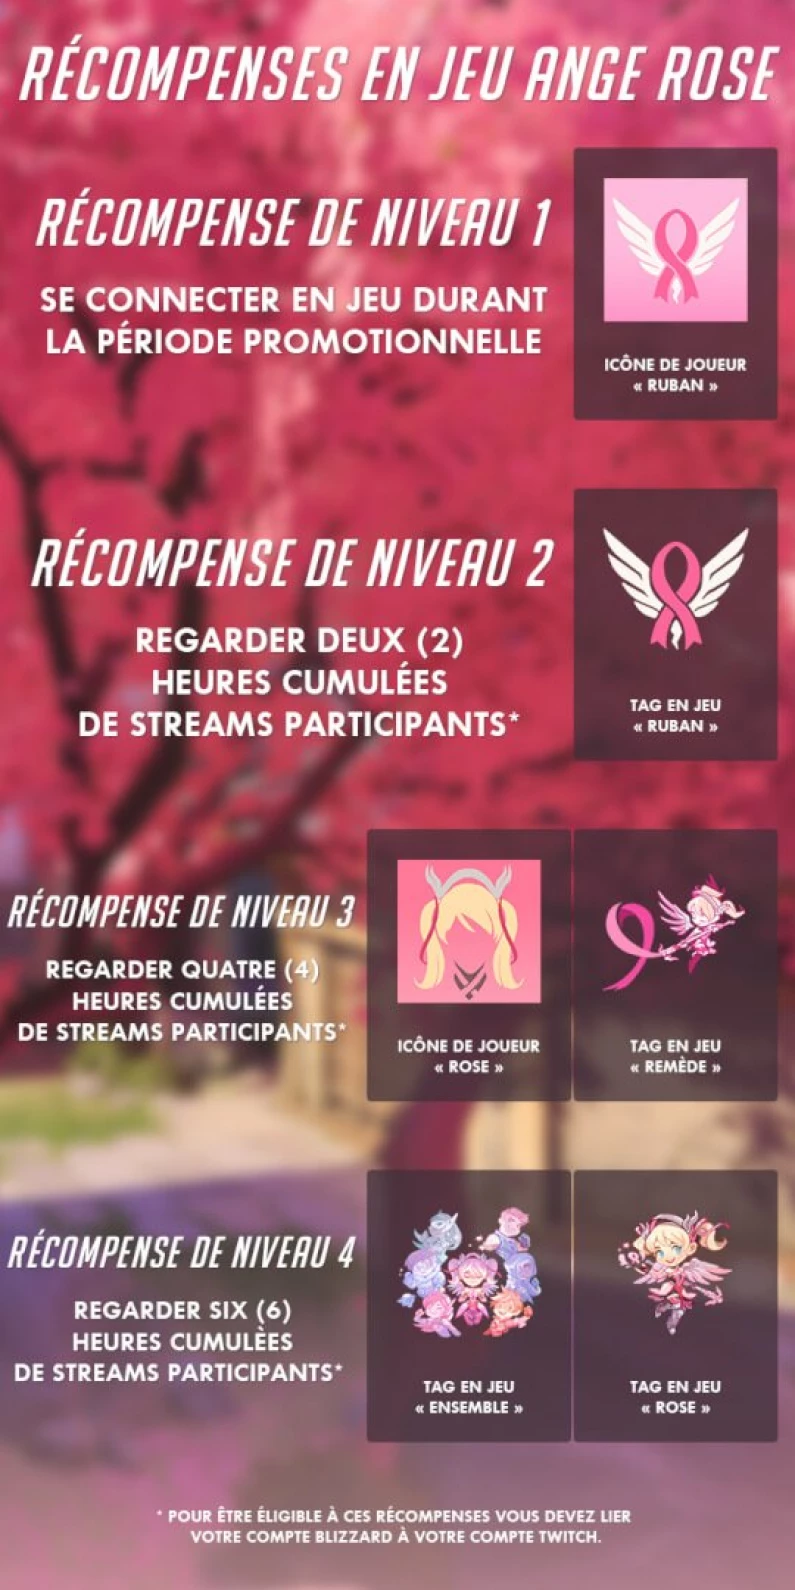 Overwatch : Mercy tout en rose pour lutter contre le cancer du sein !